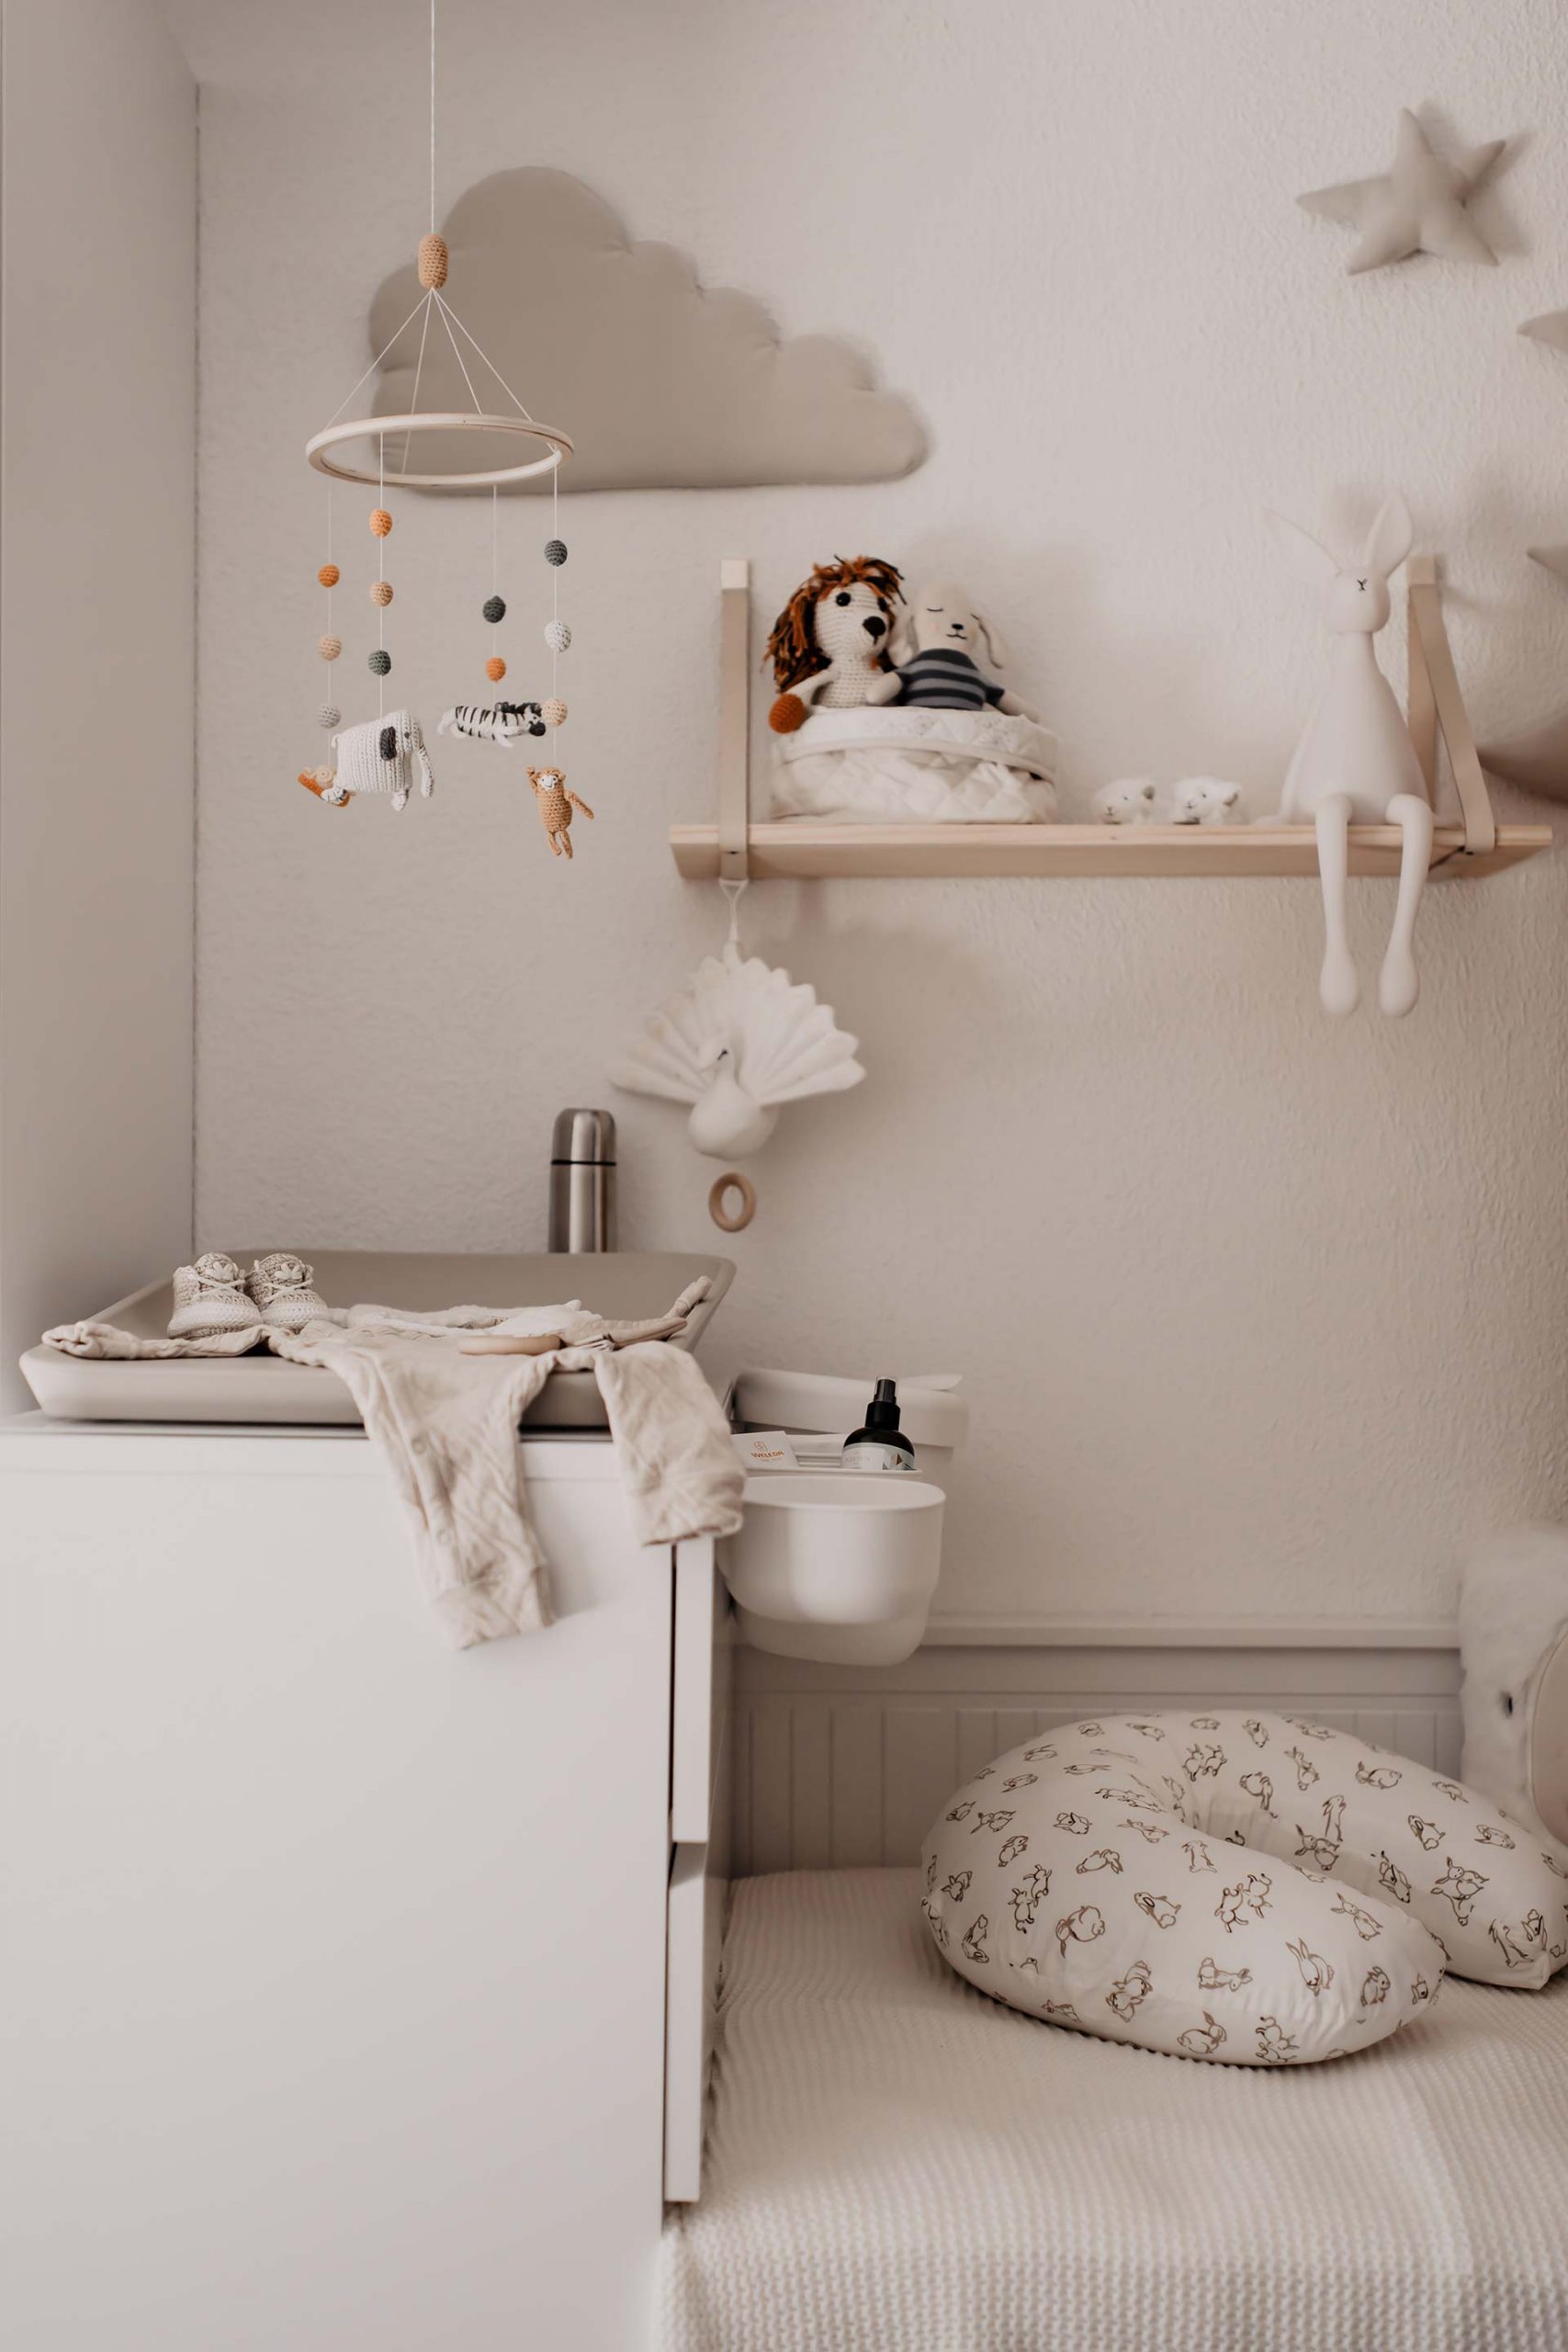 IKEA-Hack fürs Babyzimmer: So haben wir aus Hemnes Tagesbett und Malm Wickelkommode einen individuellen Wickelbereich geschaffen. Mehr am Mamablog www.whoismocca.com